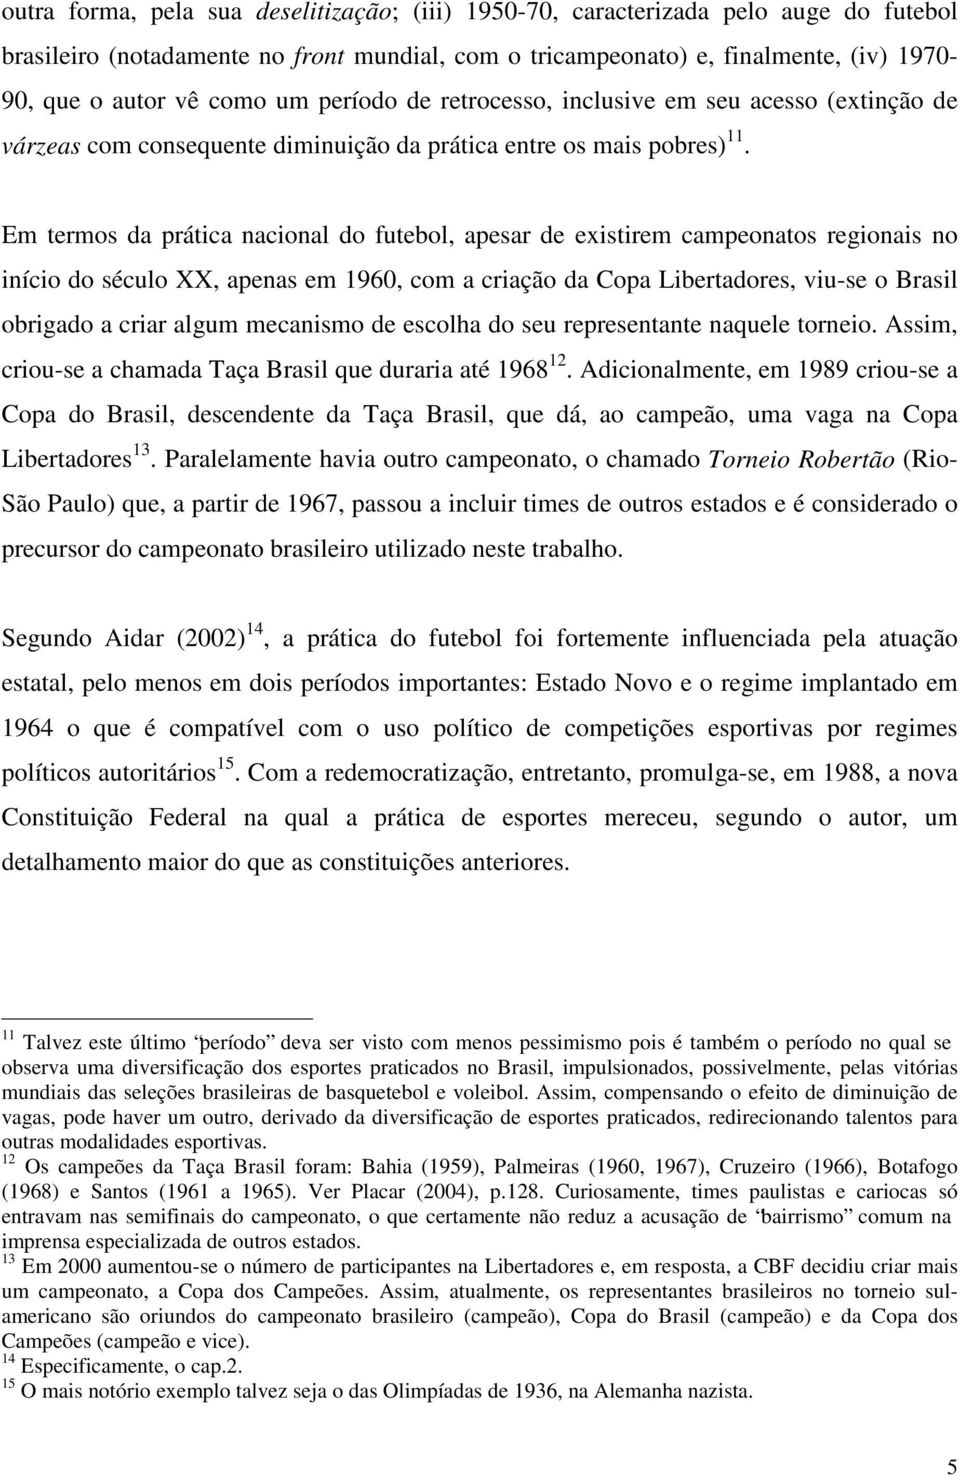 Em termos da prática nacional do futebol, apesar de existirem campeonatos regionais no início do século XX, apenas em 1960, com a criação da Copa Libertadores, viu-se o Brasil obrigado a criar algum